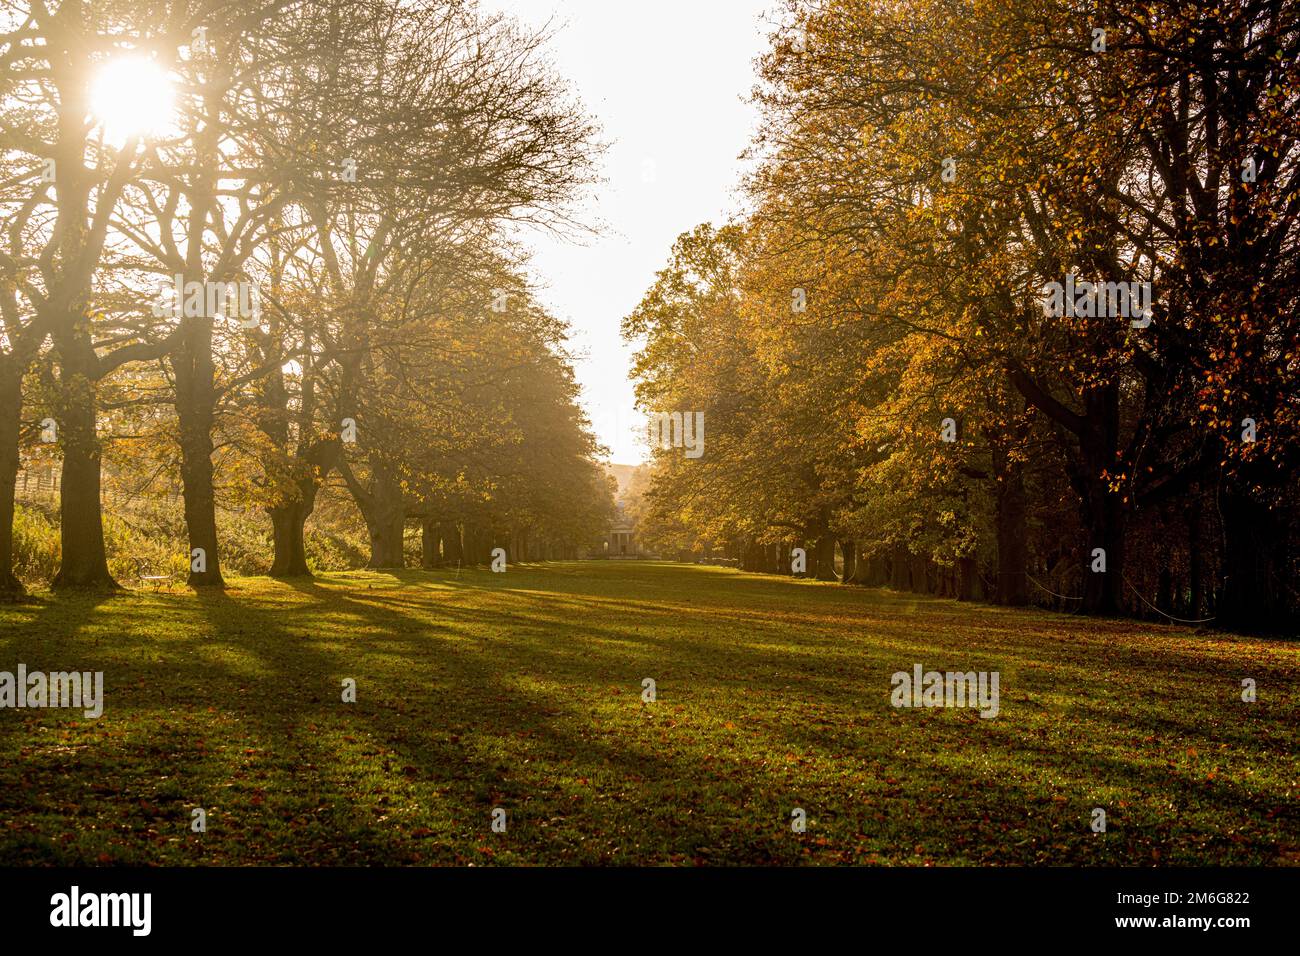 Avenue arborescente donnant sur la chapelle de Gibside, illuminée par la lumière du soleil d'automne créant de longues ombres. Tyne et Wear. ROYAUME-UNI. Banque D'Images